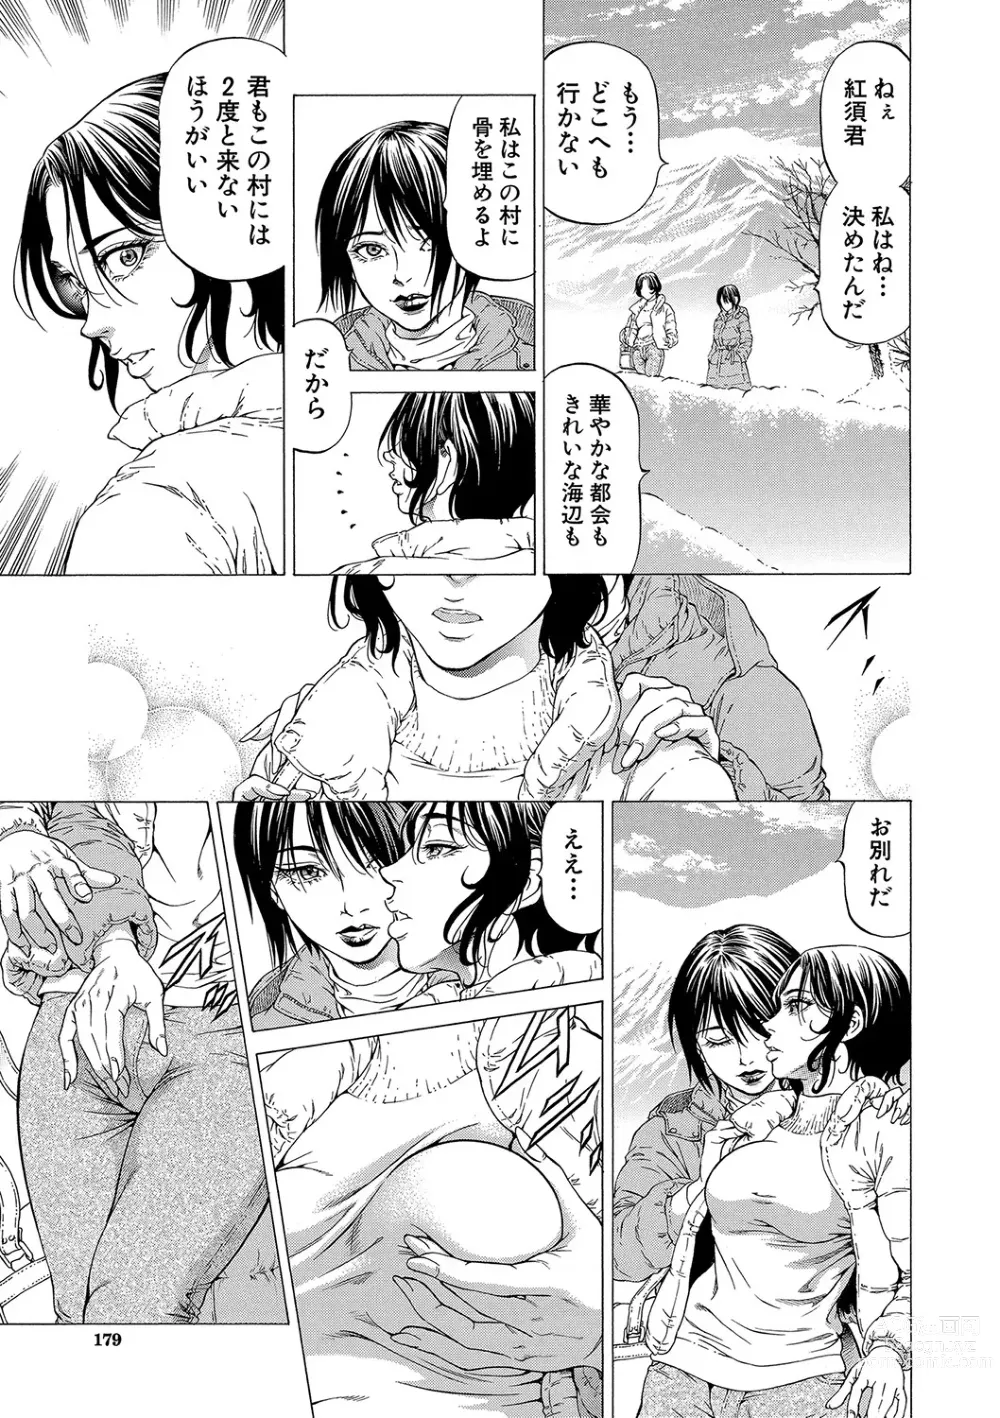 Page 180 of manga Shasei Suiri ~Megami no Yakata~